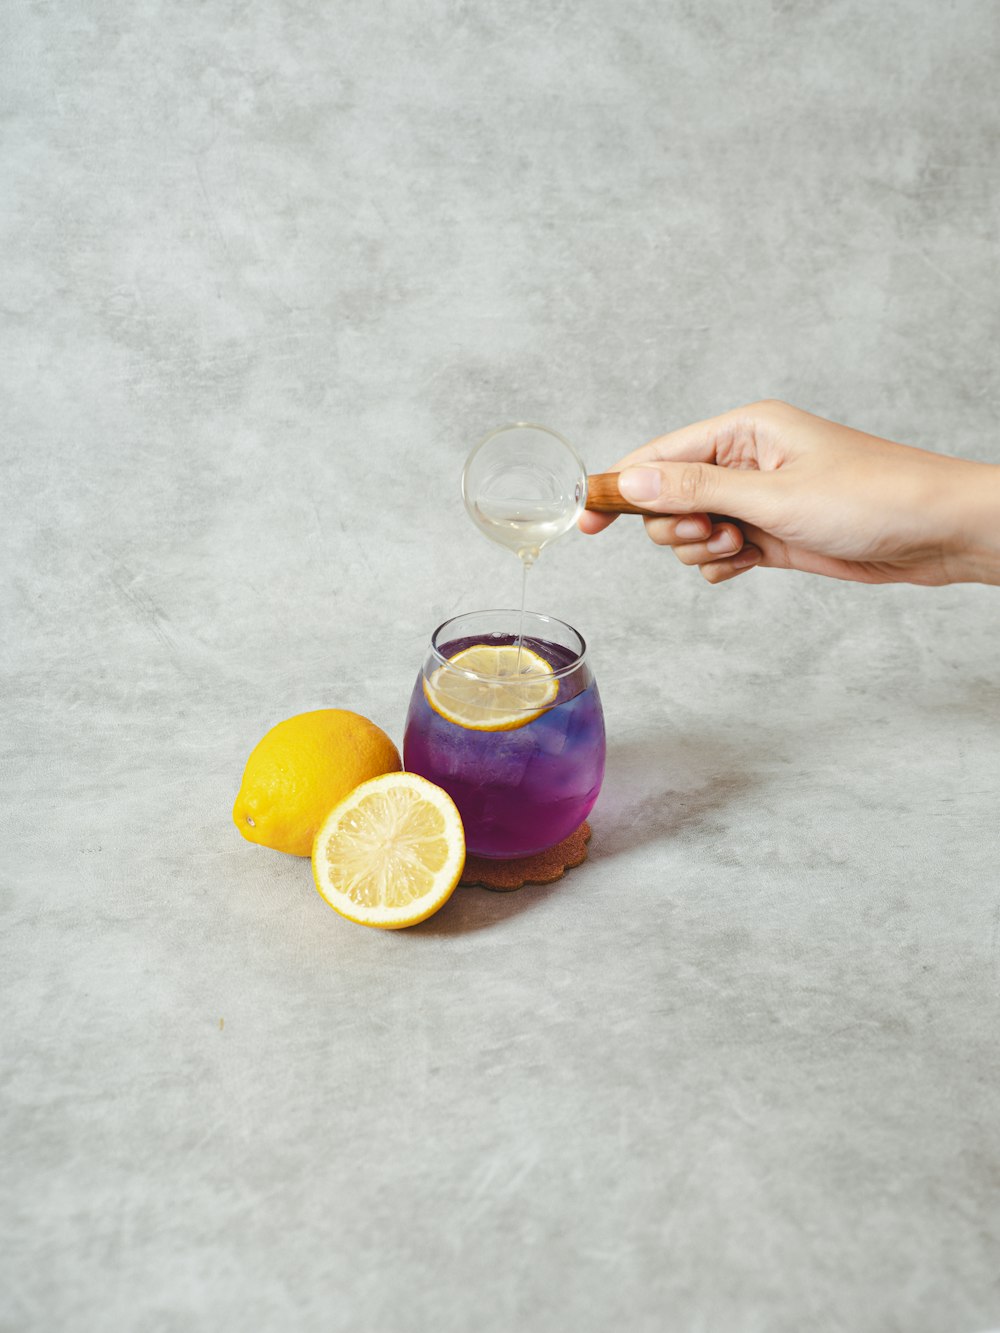 persona sosteniendo un vaso de vidrio transparente con jugo de naranja